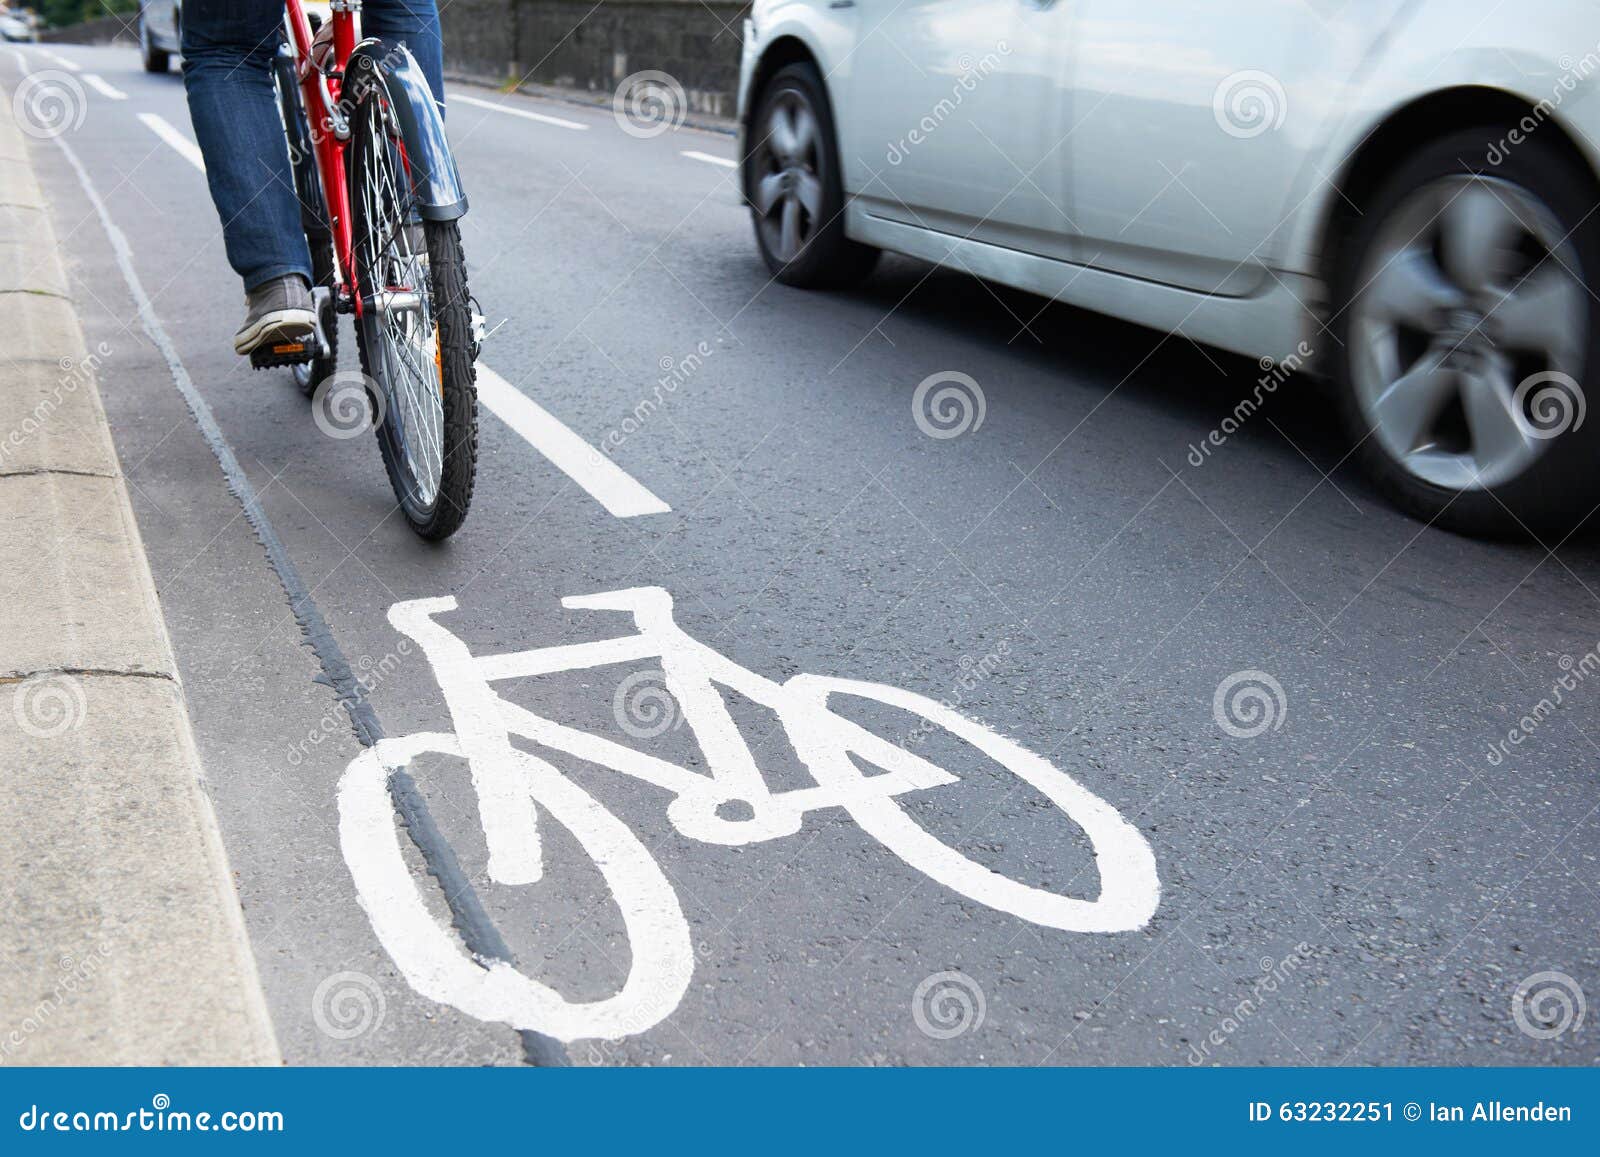 man on bike using cycle lane as traffic speeds past